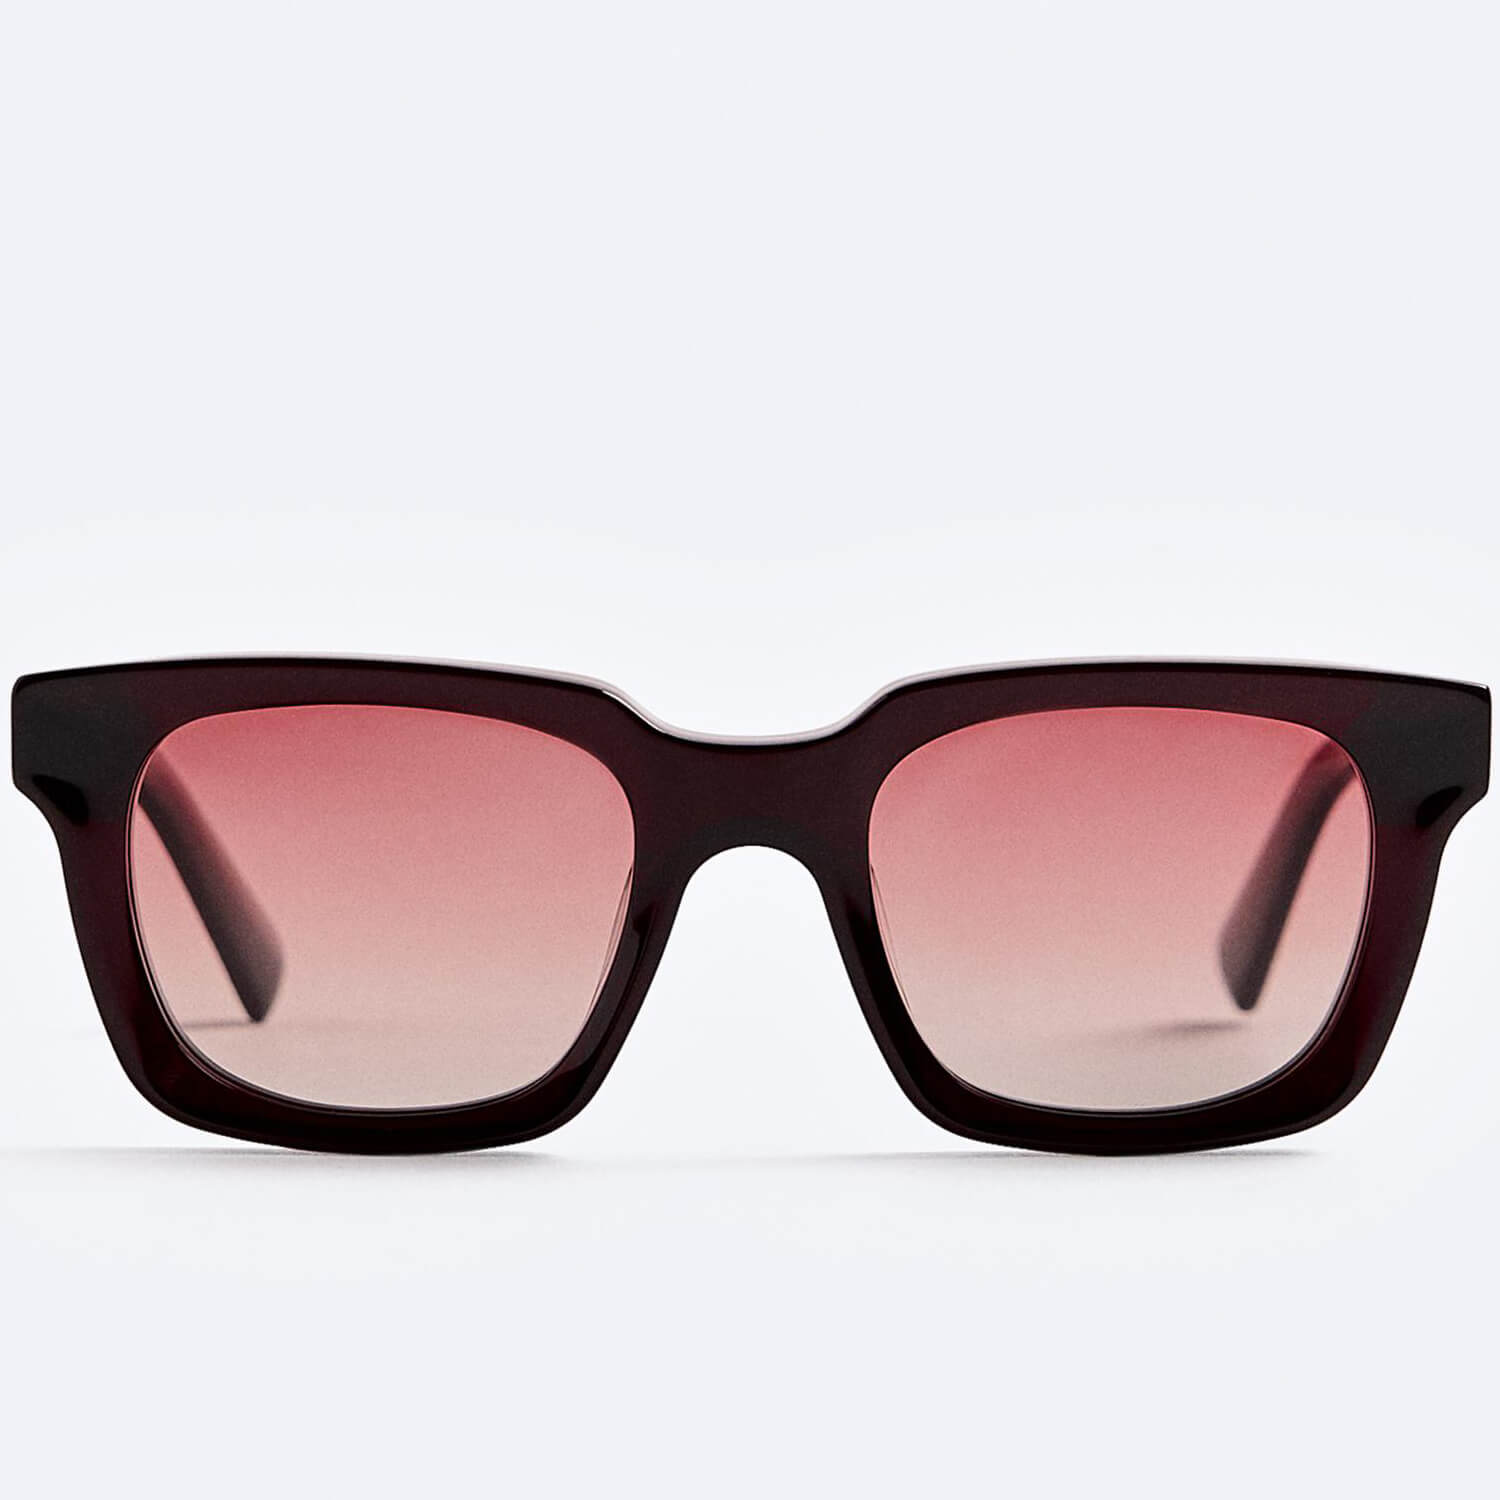 Солнцезащитные очки Zara Square, бордовый солнцезащитные очки zara square коричневый